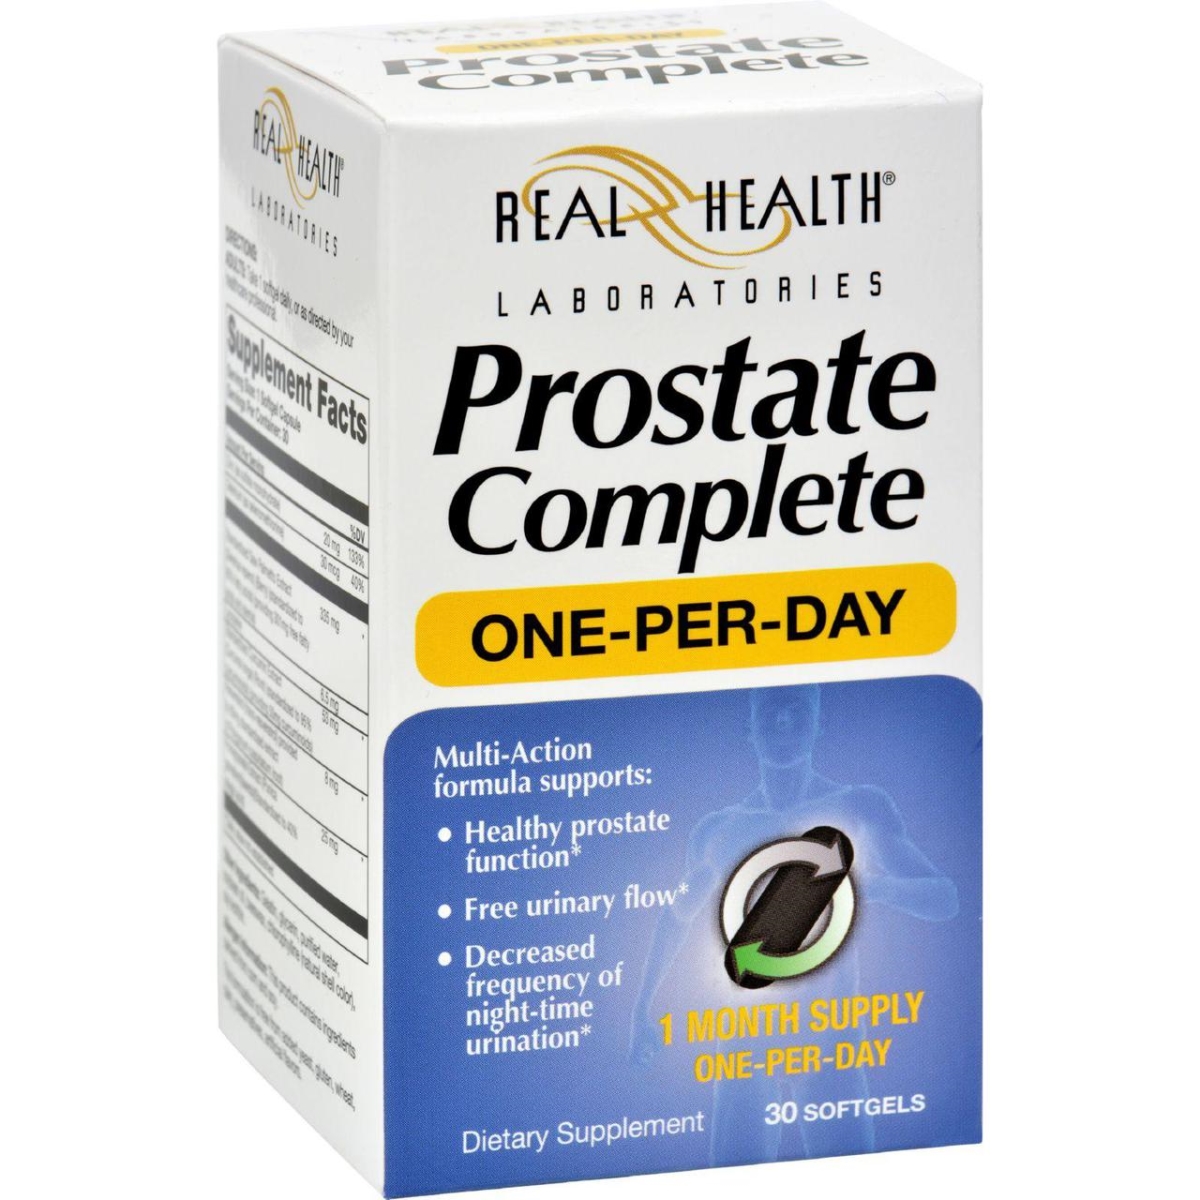 Hg1511179 Prostate Complete - 30 Softgels